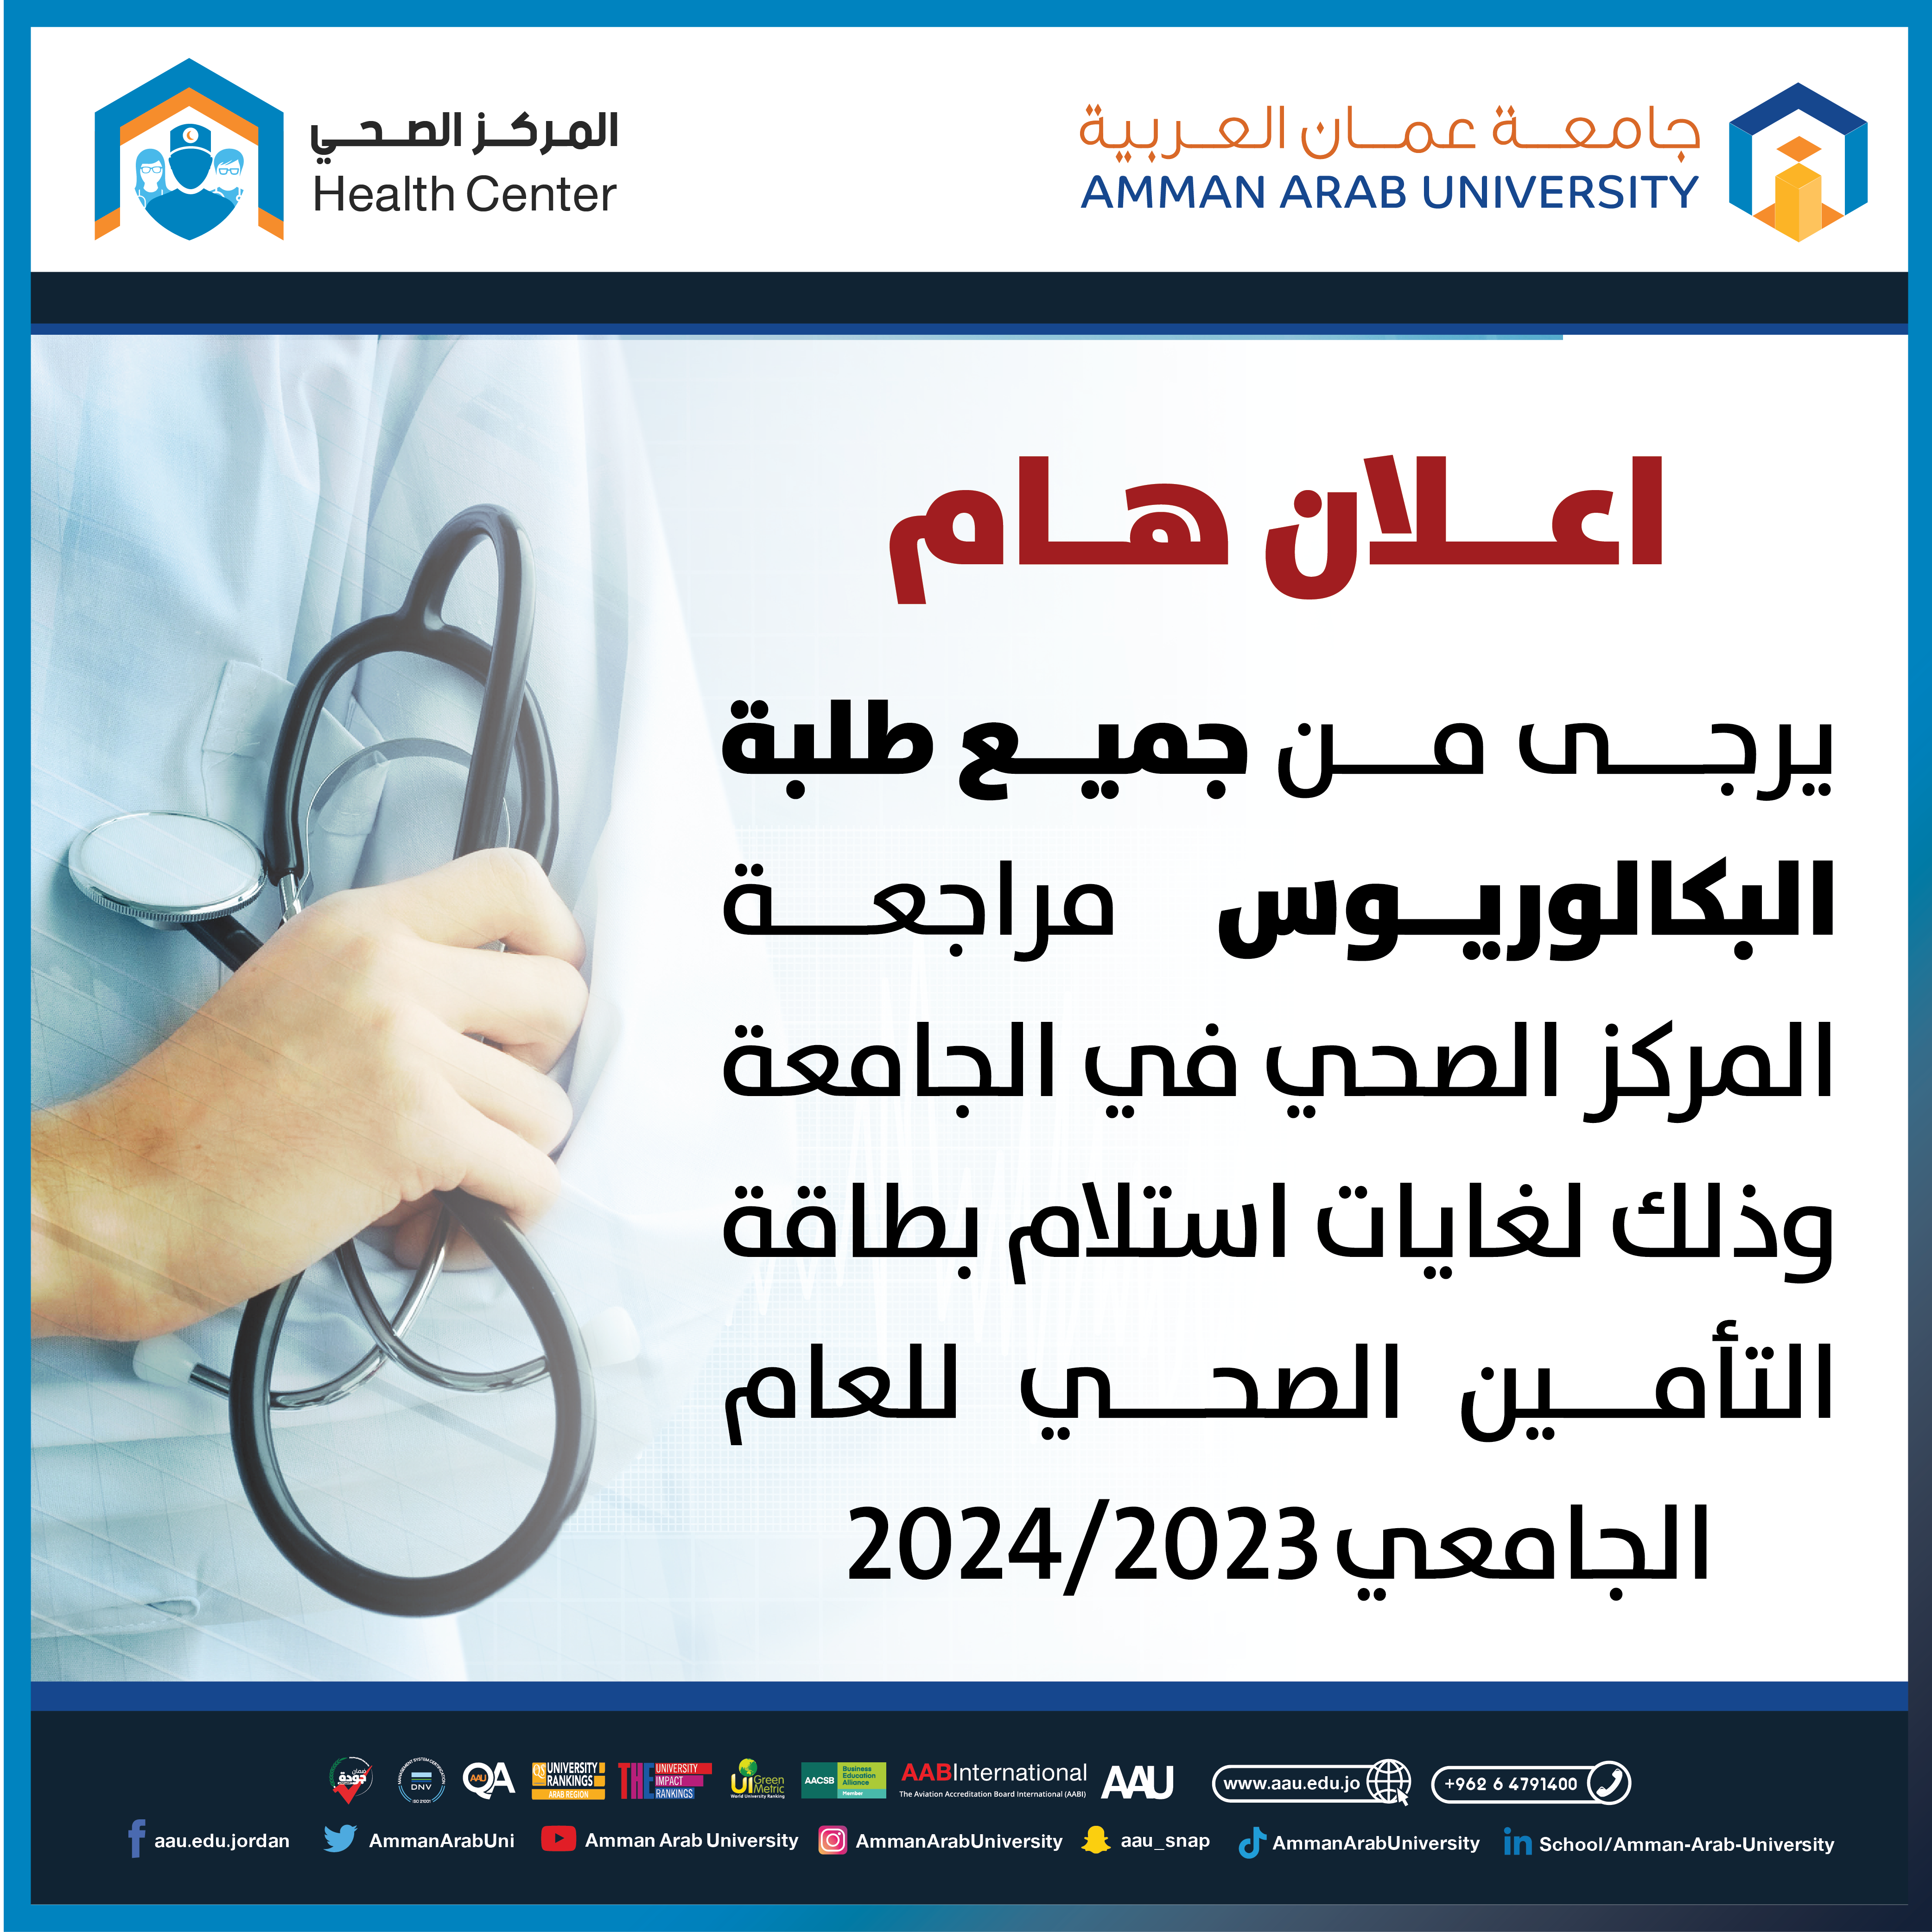 اعلان هام - مراجعة المركز الصحي لاستلام بطاقة التأمين الصحي للعام الجامعي 2023-2024